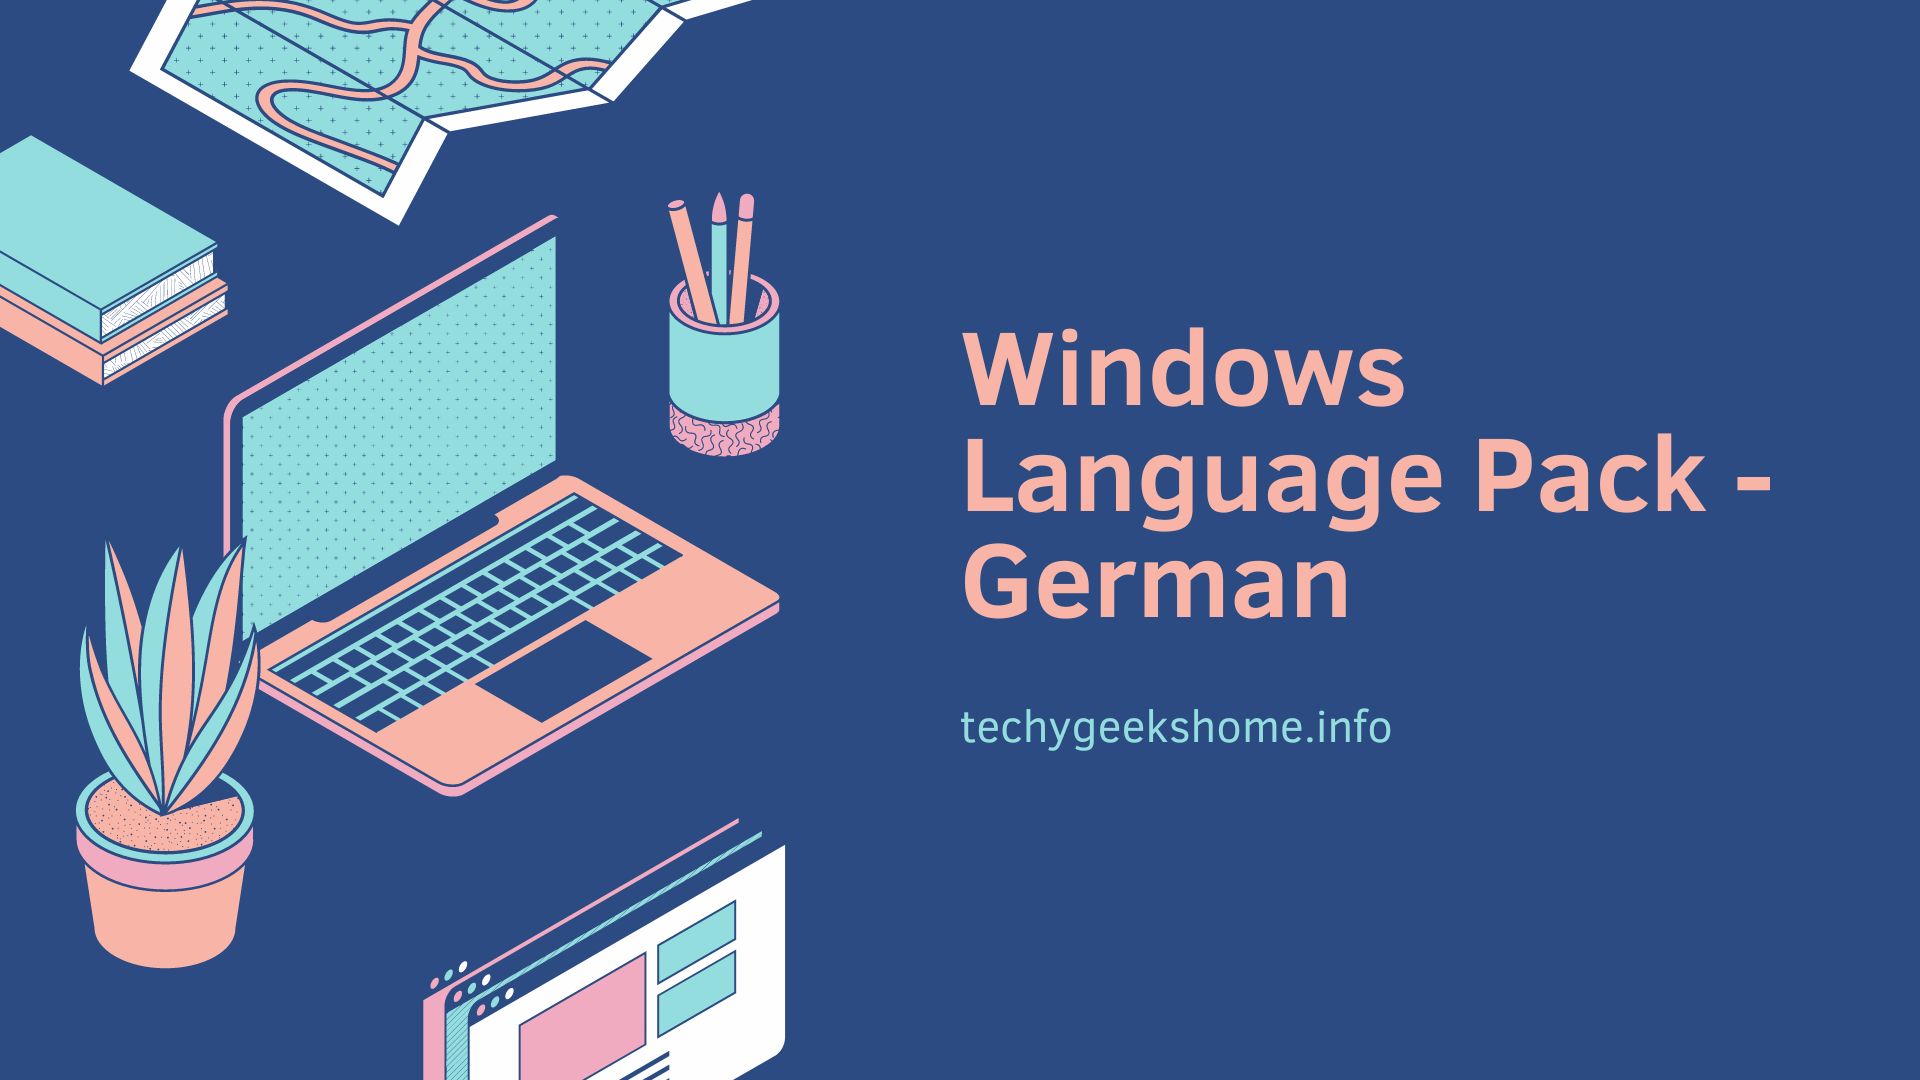 Windows 10 Language Pack - German